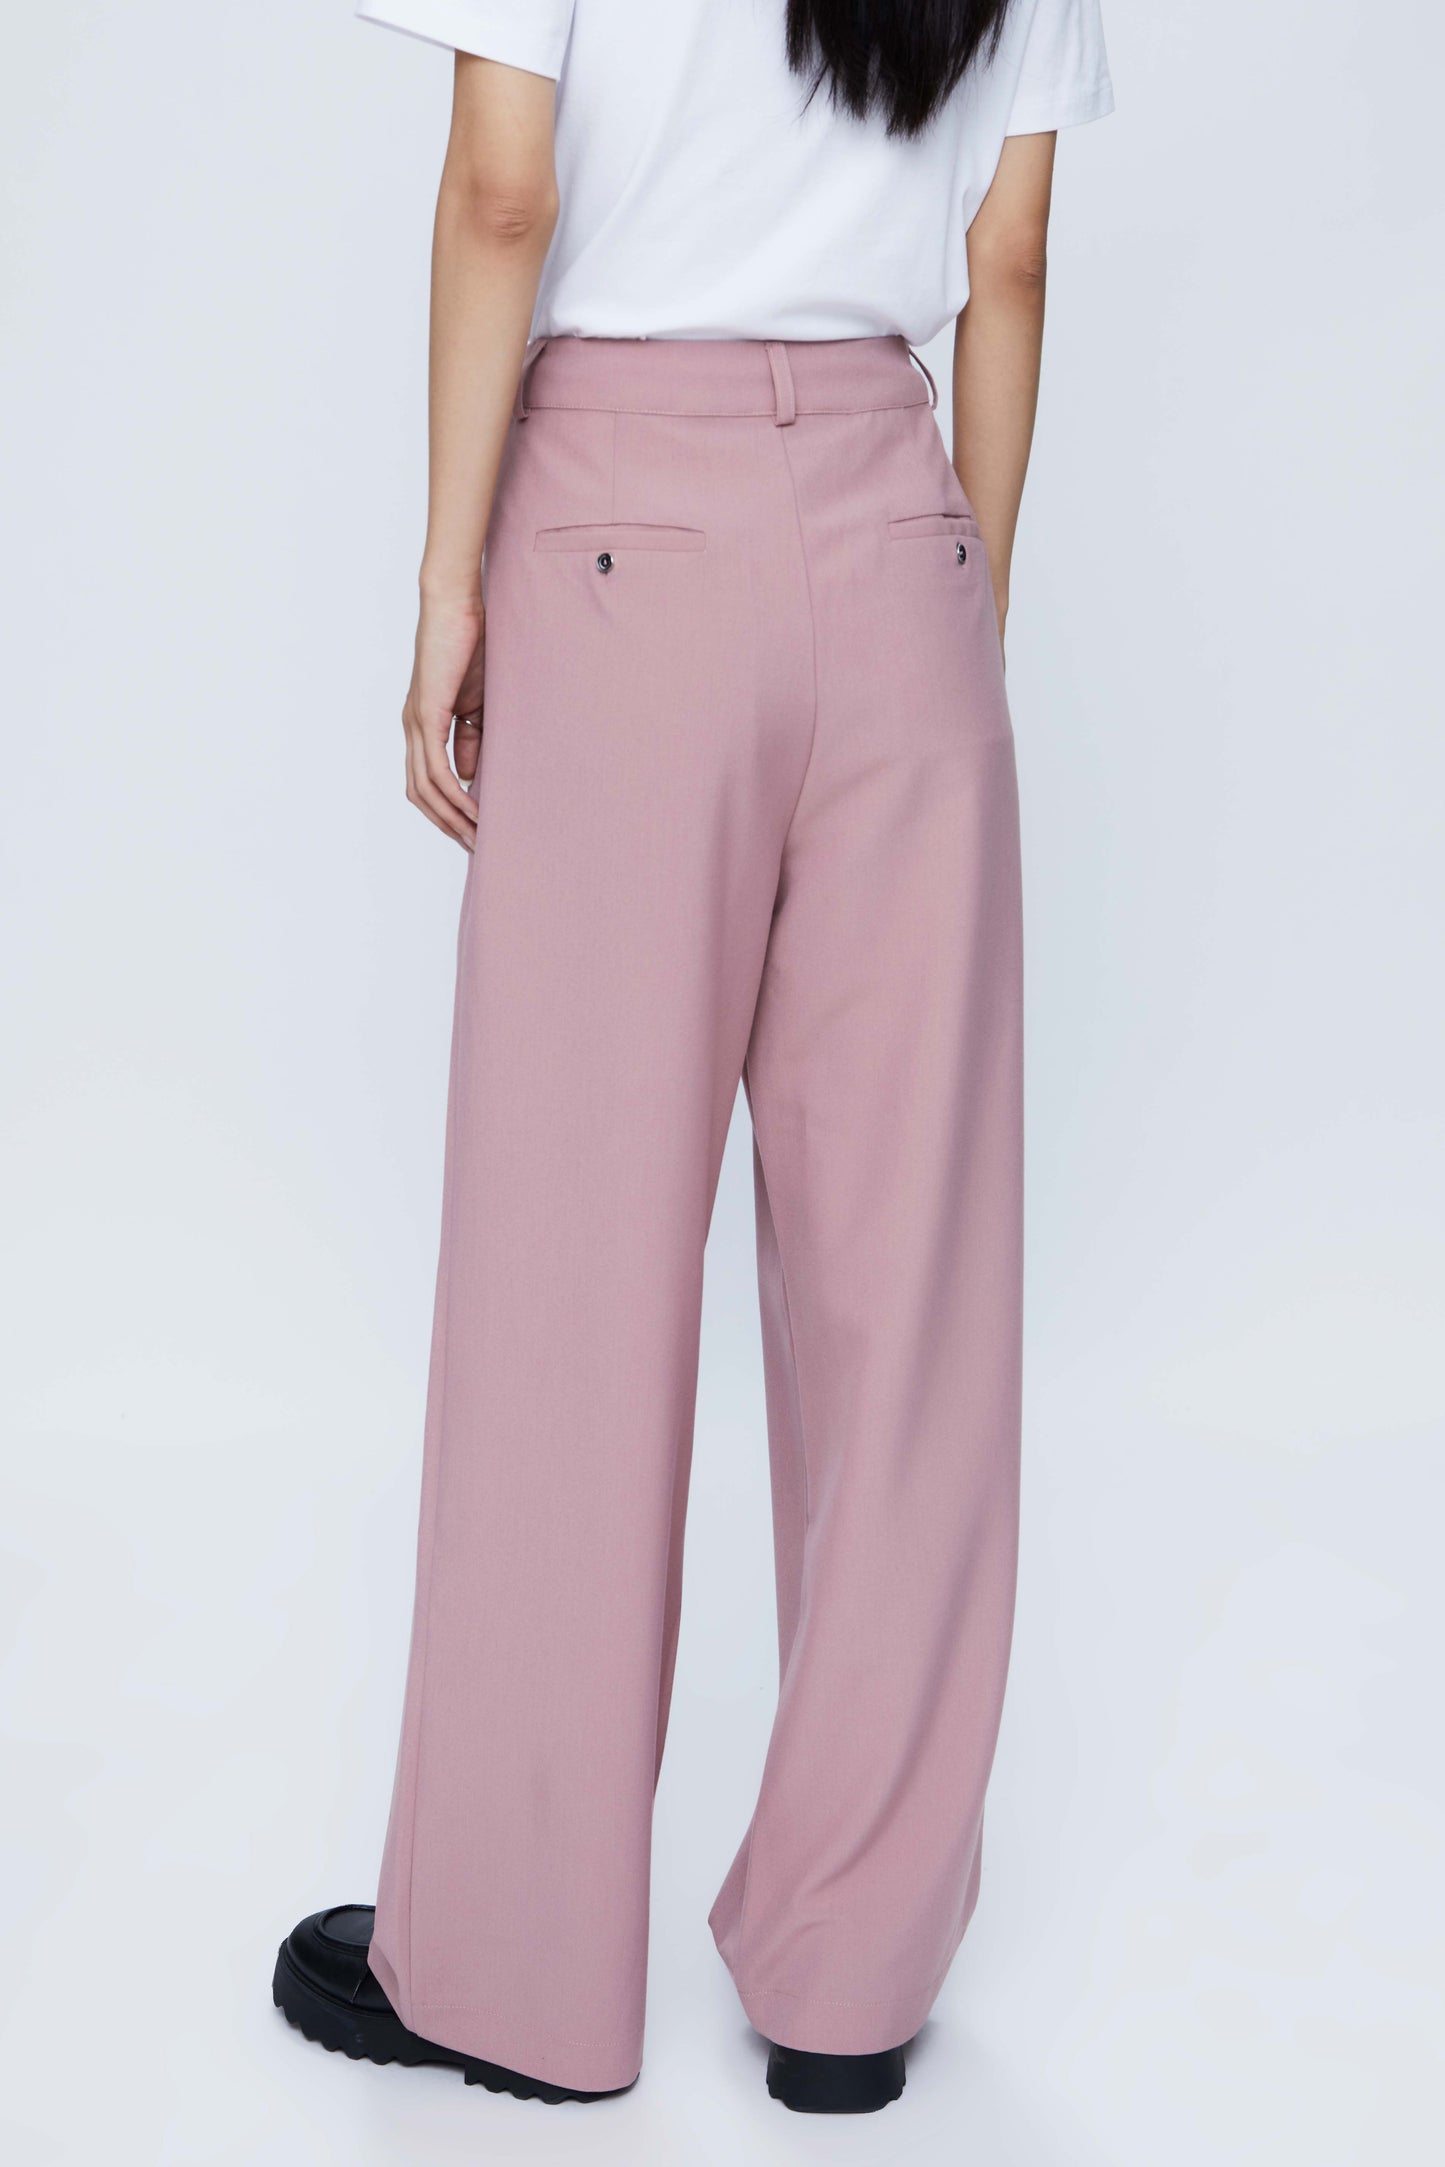 Pink crepe suit pants